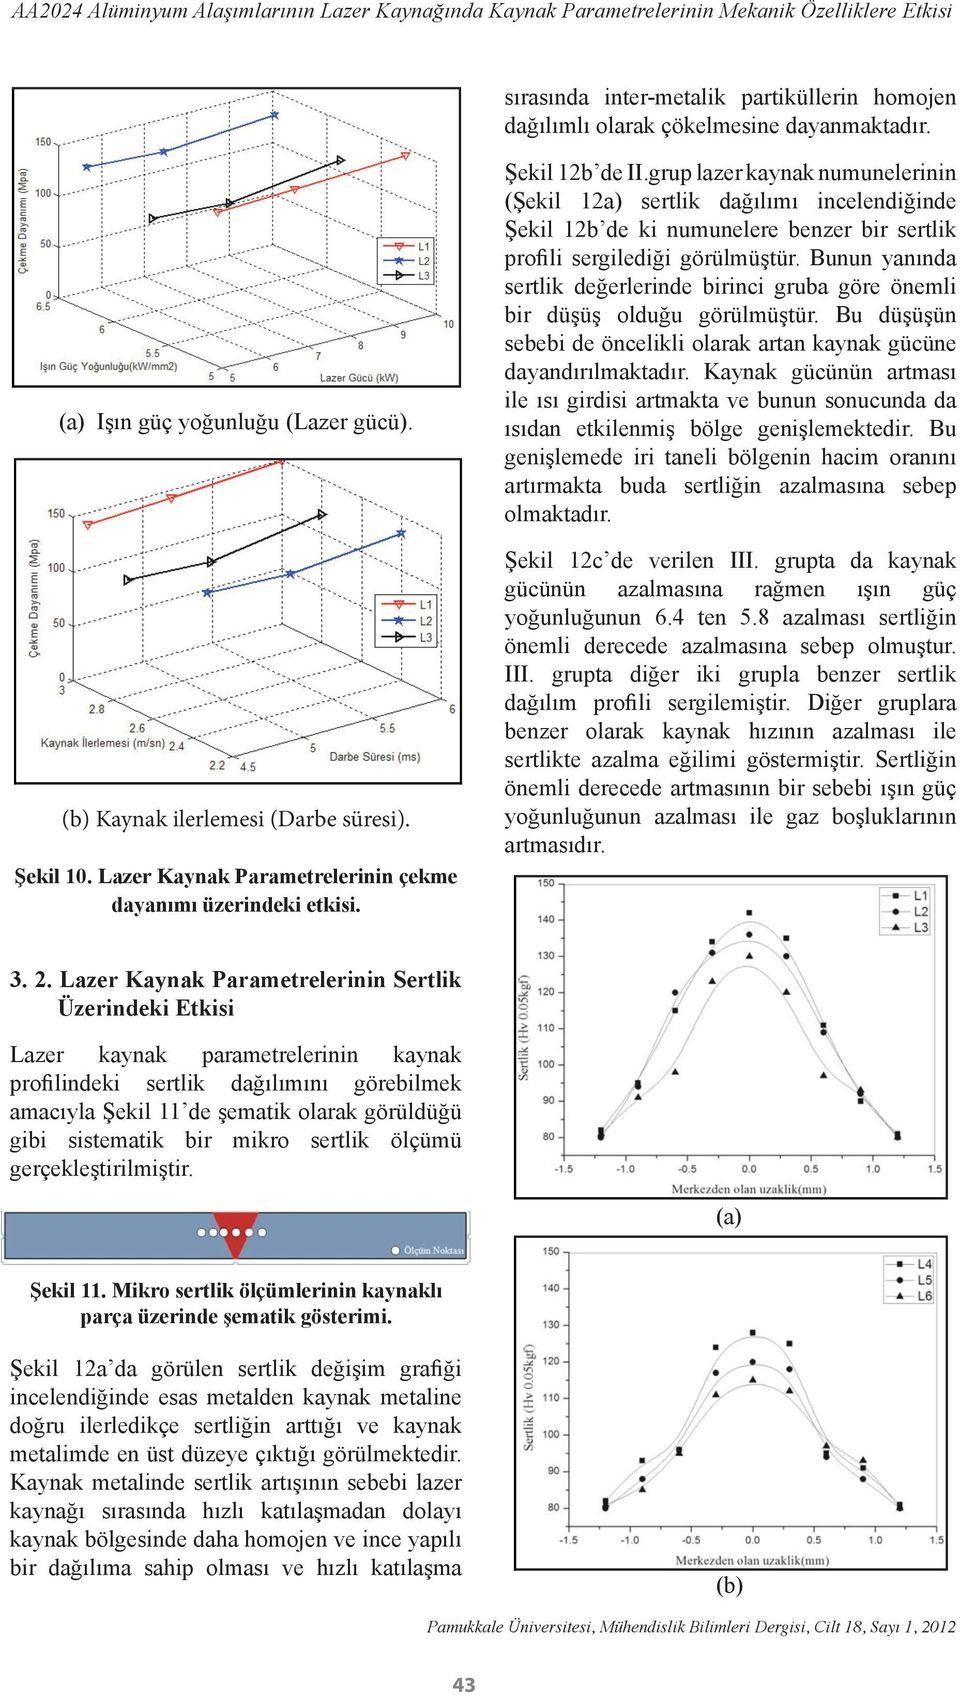 grup lazer kaynak numunelerinin (Şekil 12a) sertlik dağılımı incelendiğinde Şekil 12b de ki numunelere benzer bir sertlik profili sergilediği görülmüştür.